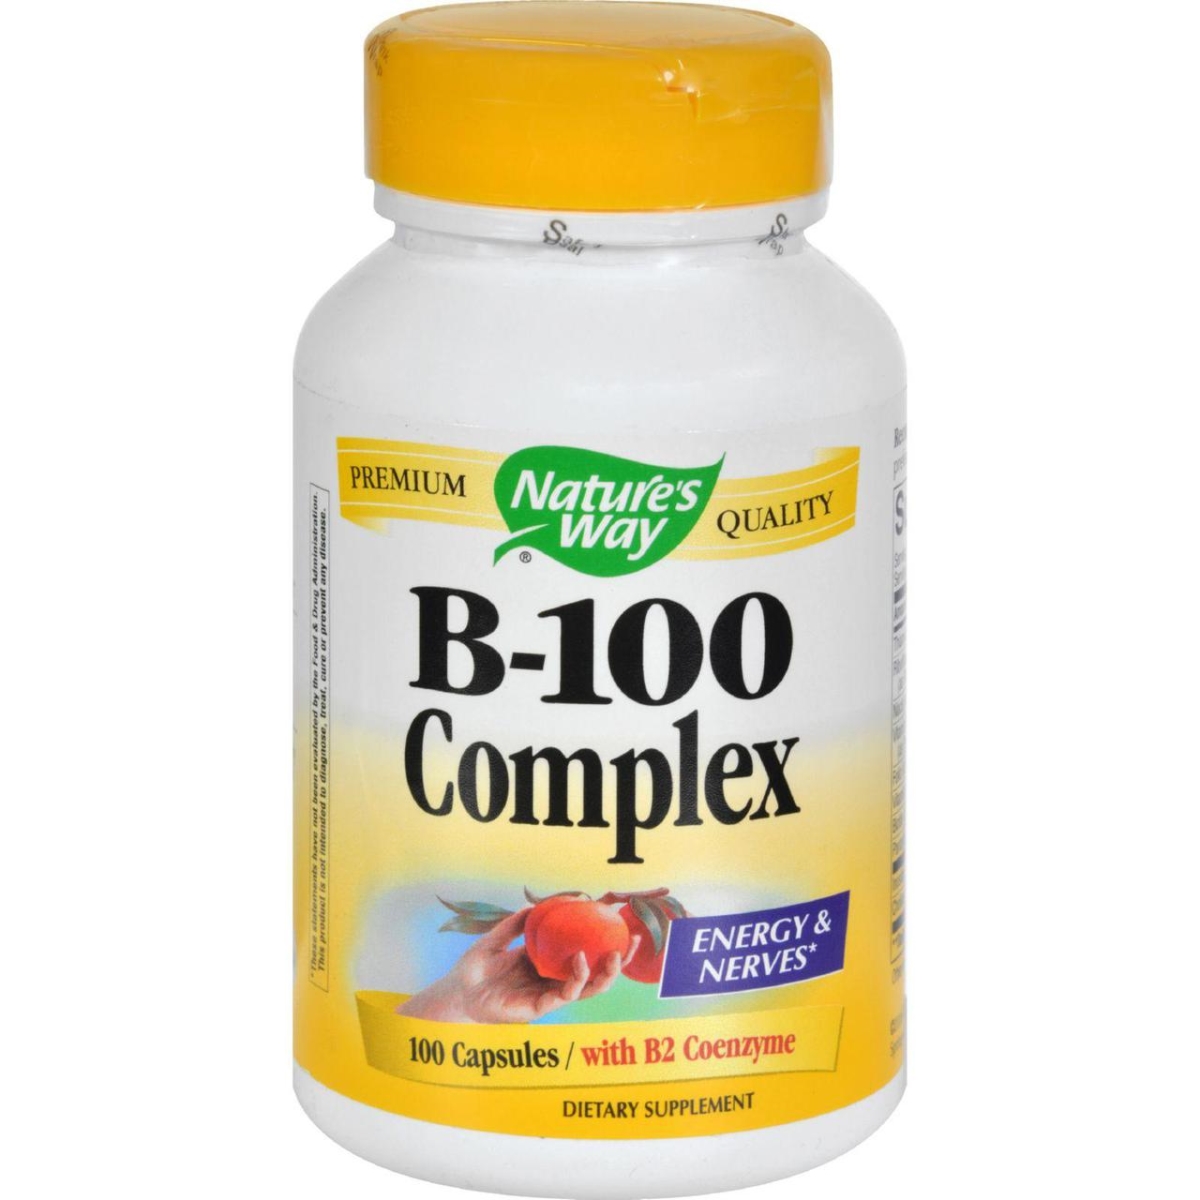 Hg0816587 Vitamin B-100 Complex, 100 Capsules